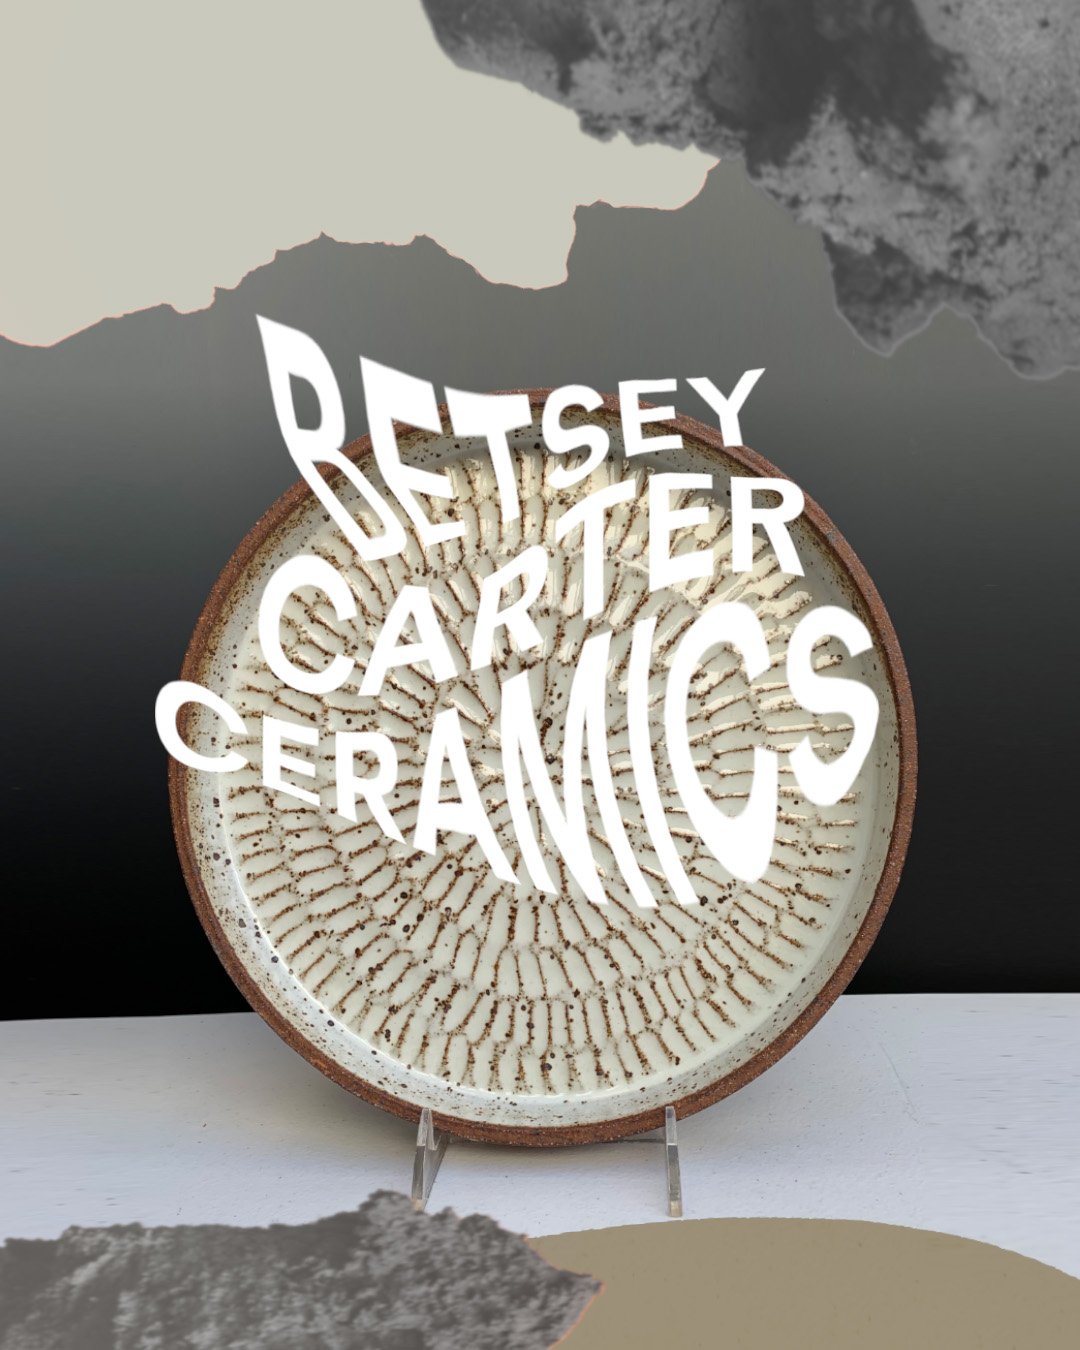 BETSEY CARTER CERAMICS